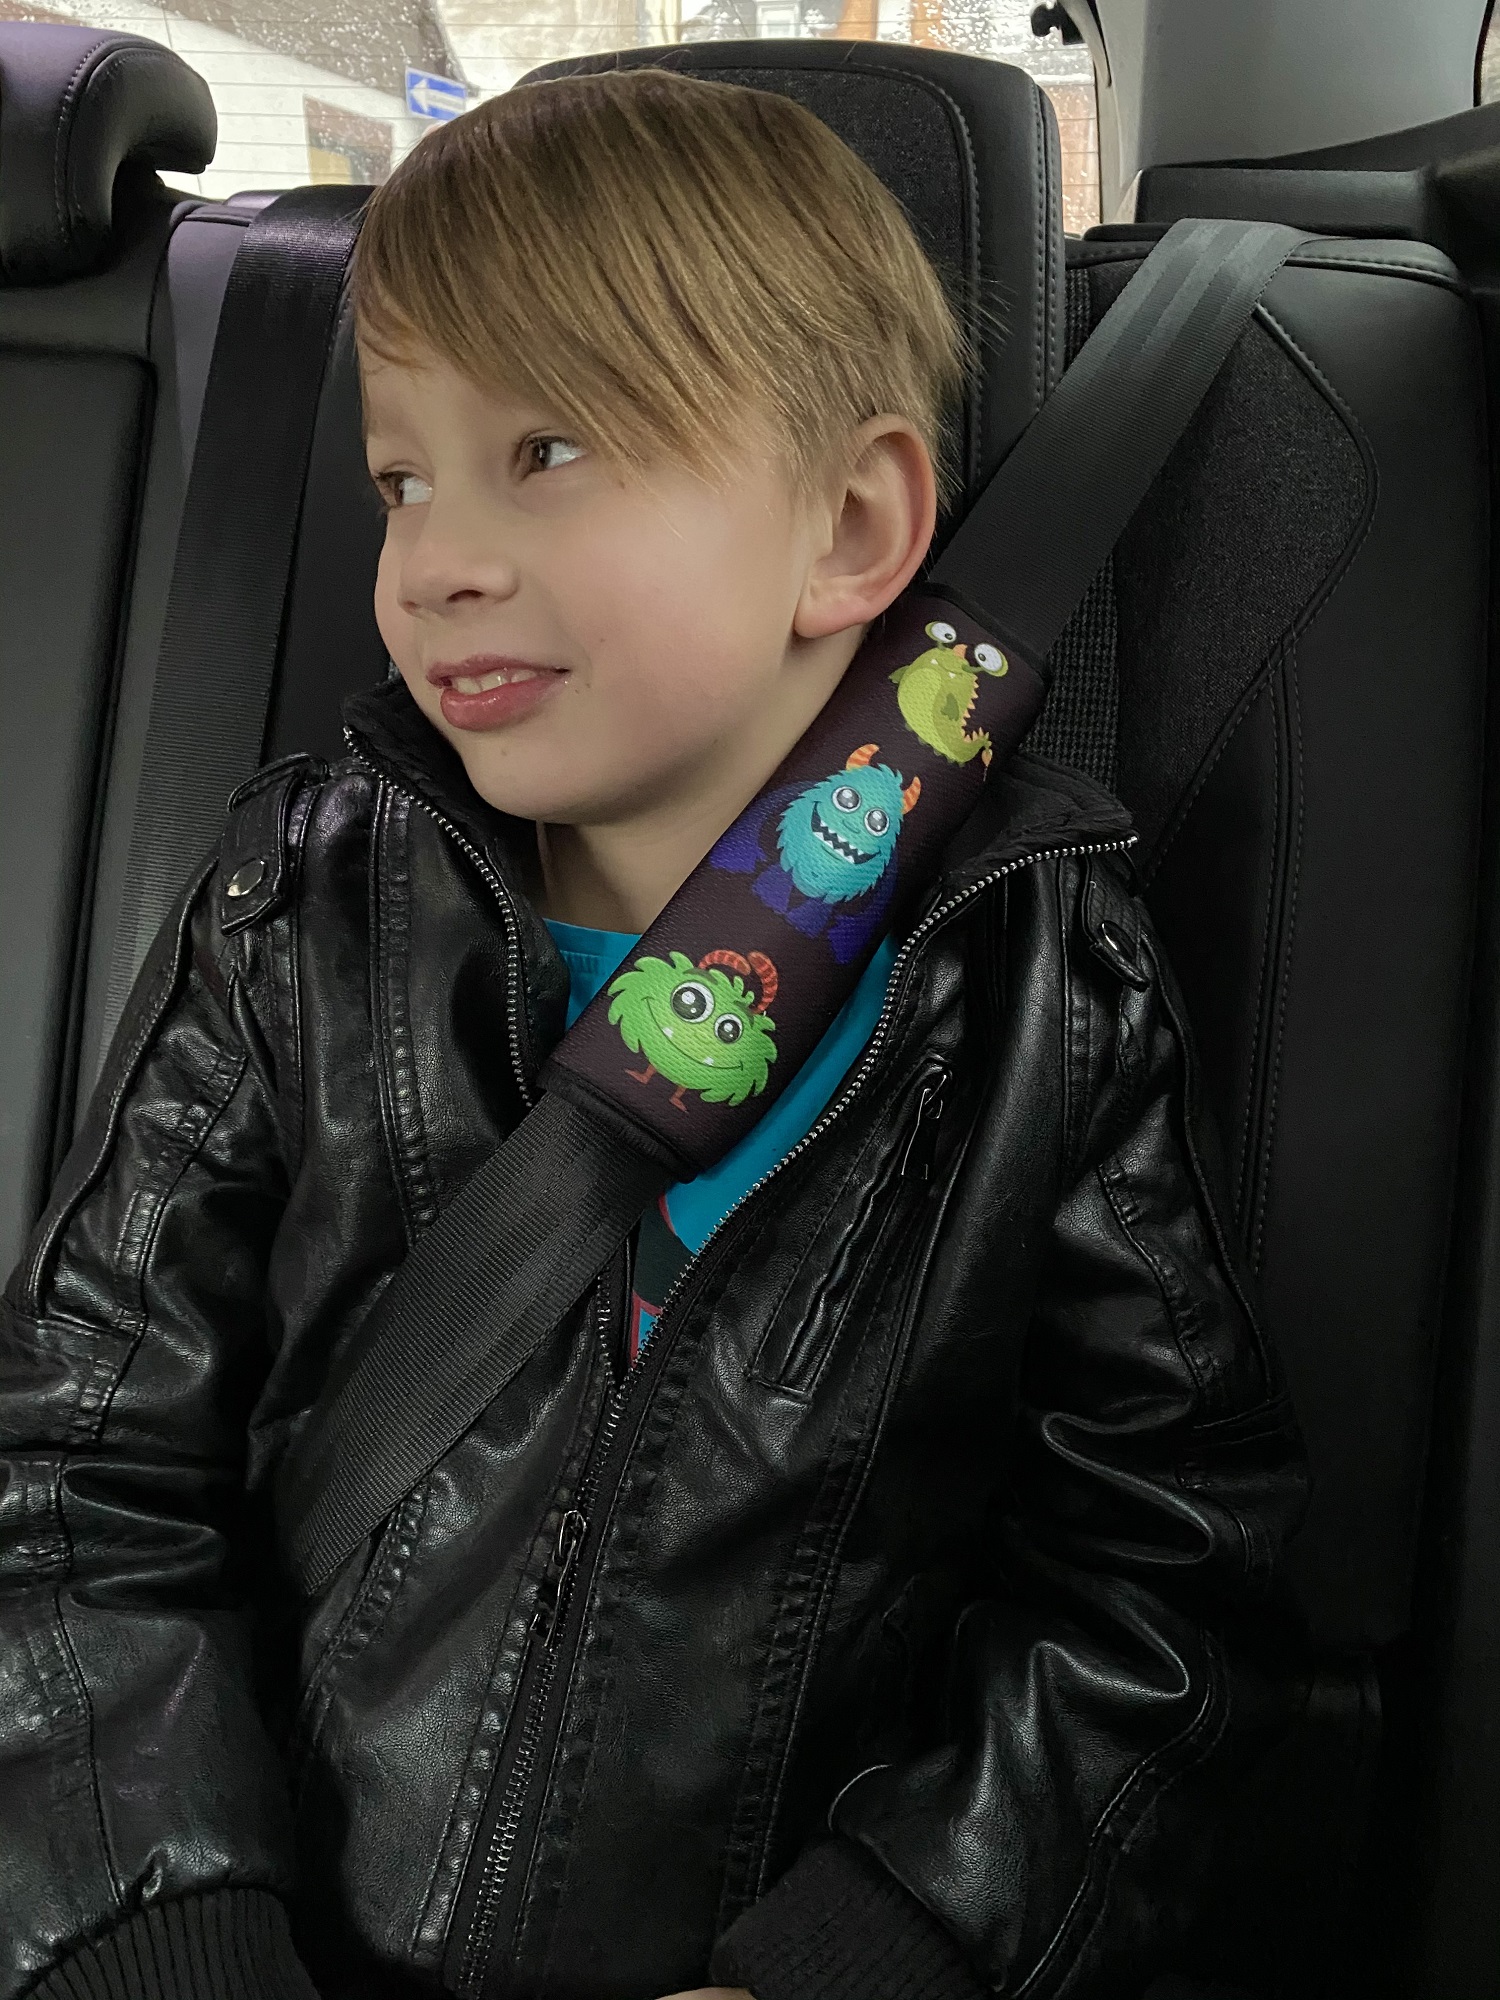 HECKBO 1x Kinder Auto Gurtpolster Gurtschutz mit Rennauto Motiv -  Sicherheitsgurt Polster für Kinder und Babys- Ideal für jeden Gurt